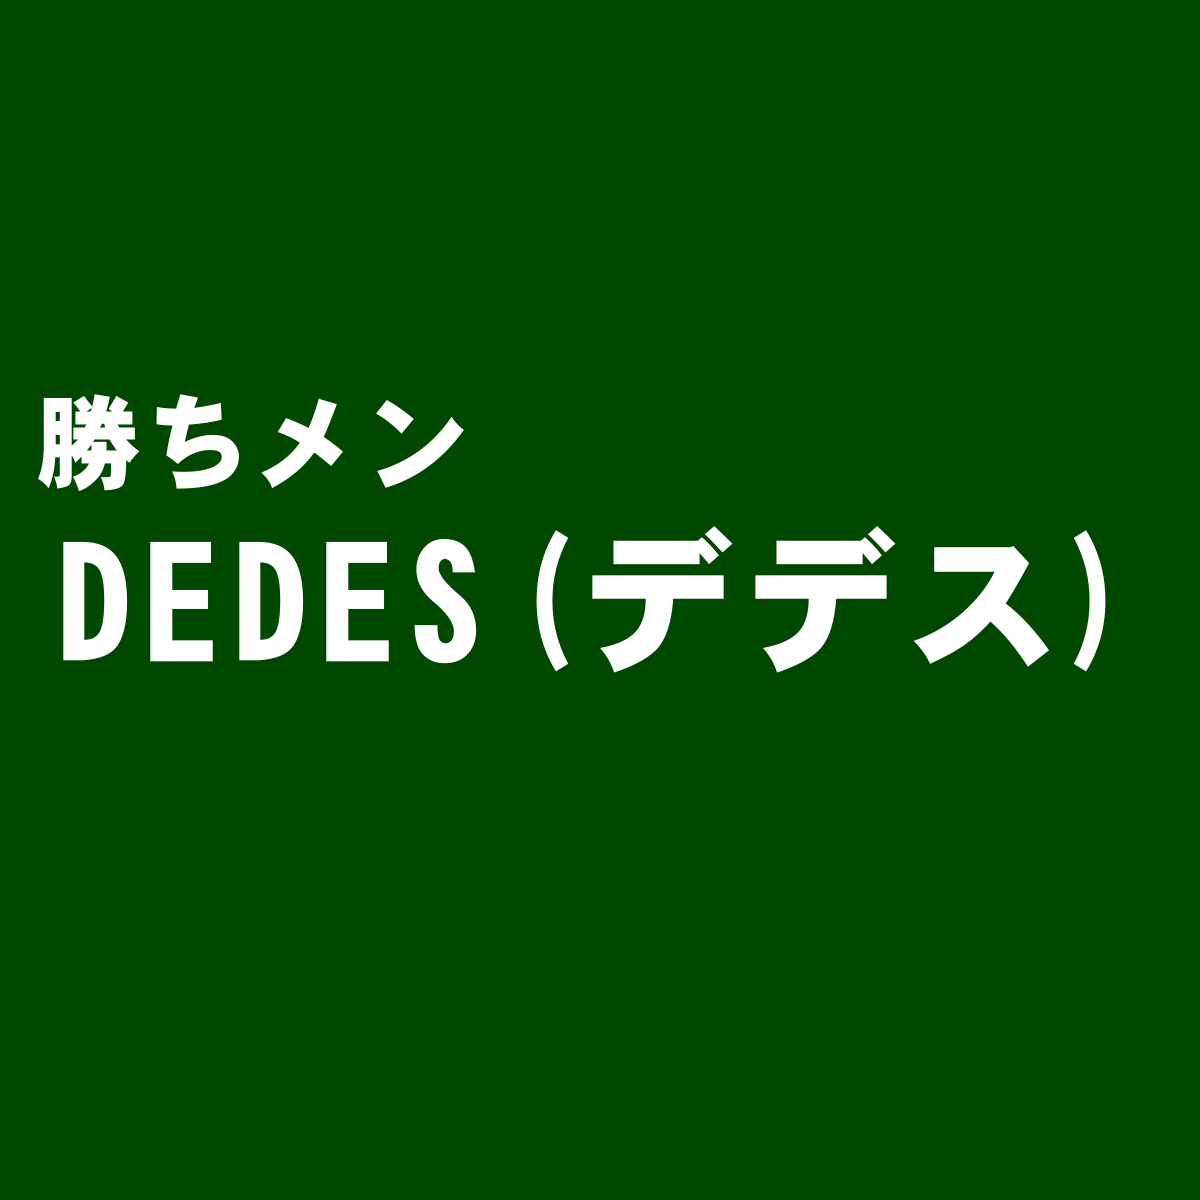 スリッポンスニーカーが評判な『DEDES(デデス)』の独断評価